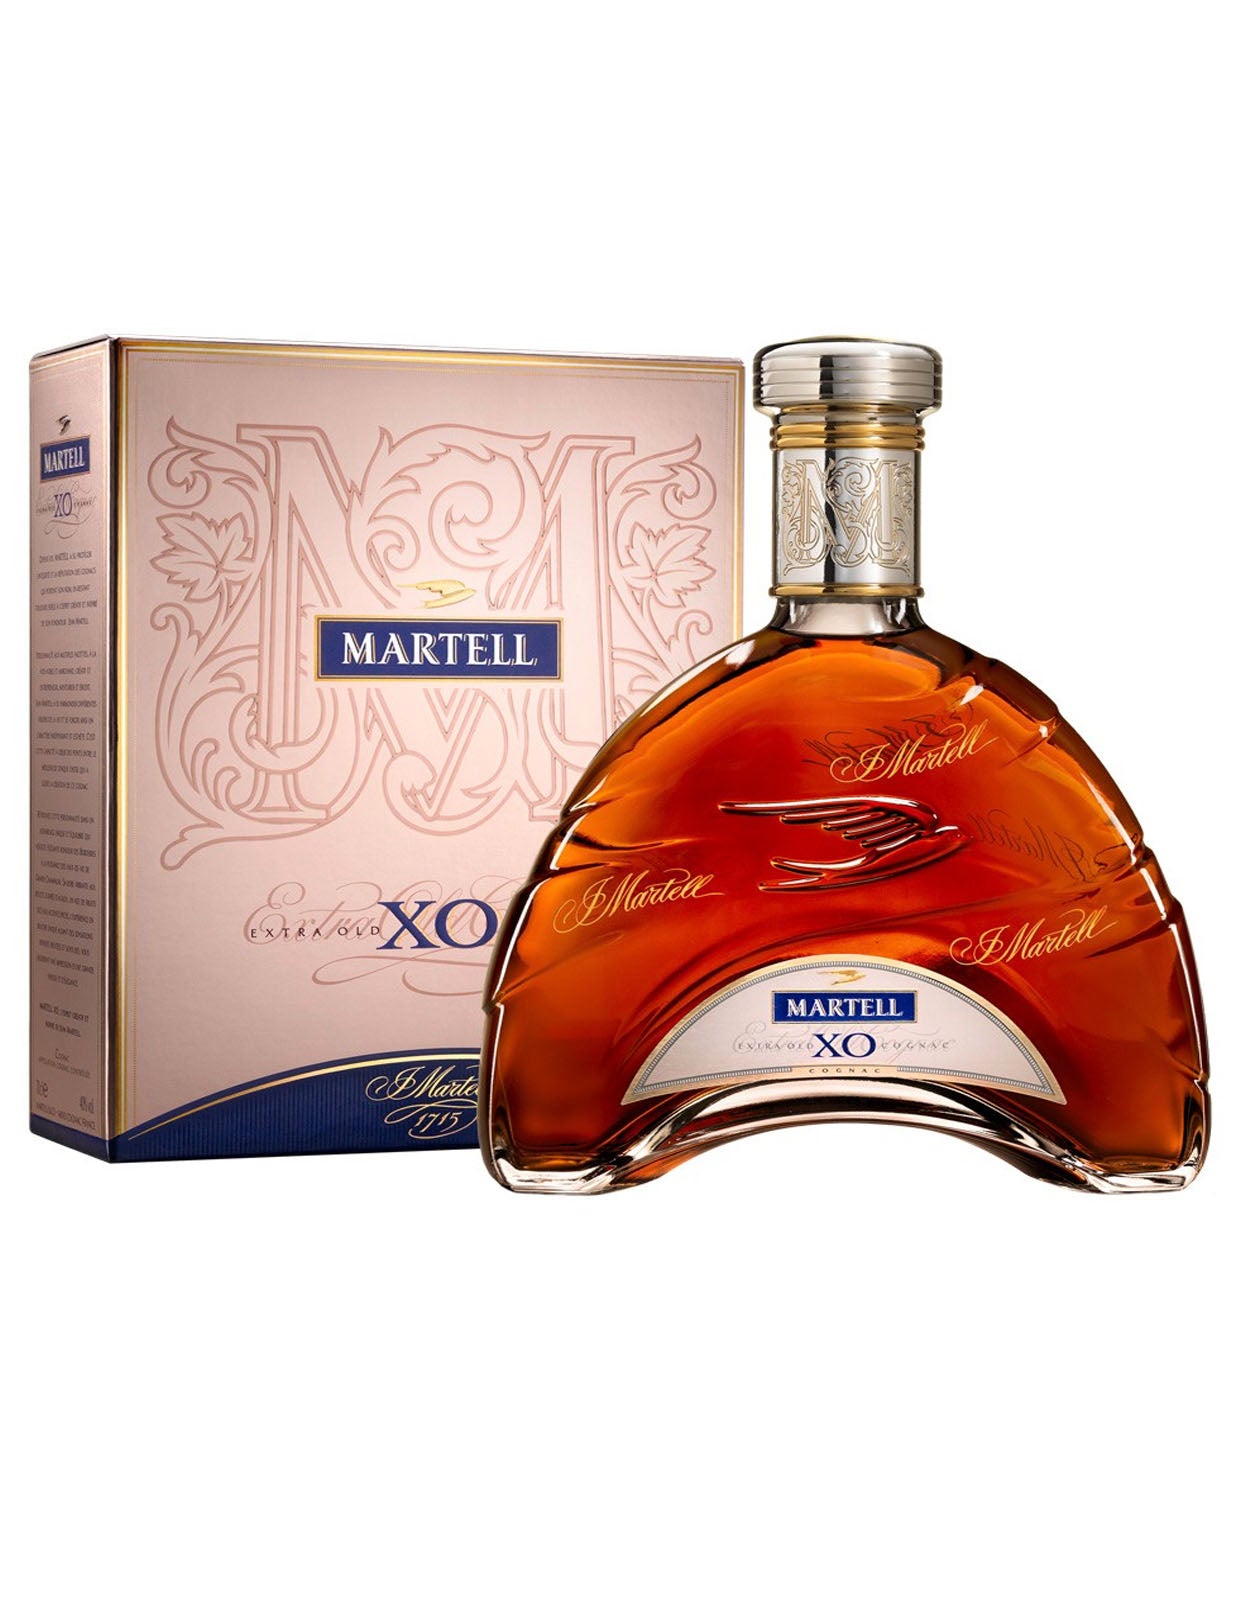 Buy Martell XO Supreme Cognac | ZYN.ca - ZYN THE WINE MARKET LTD.